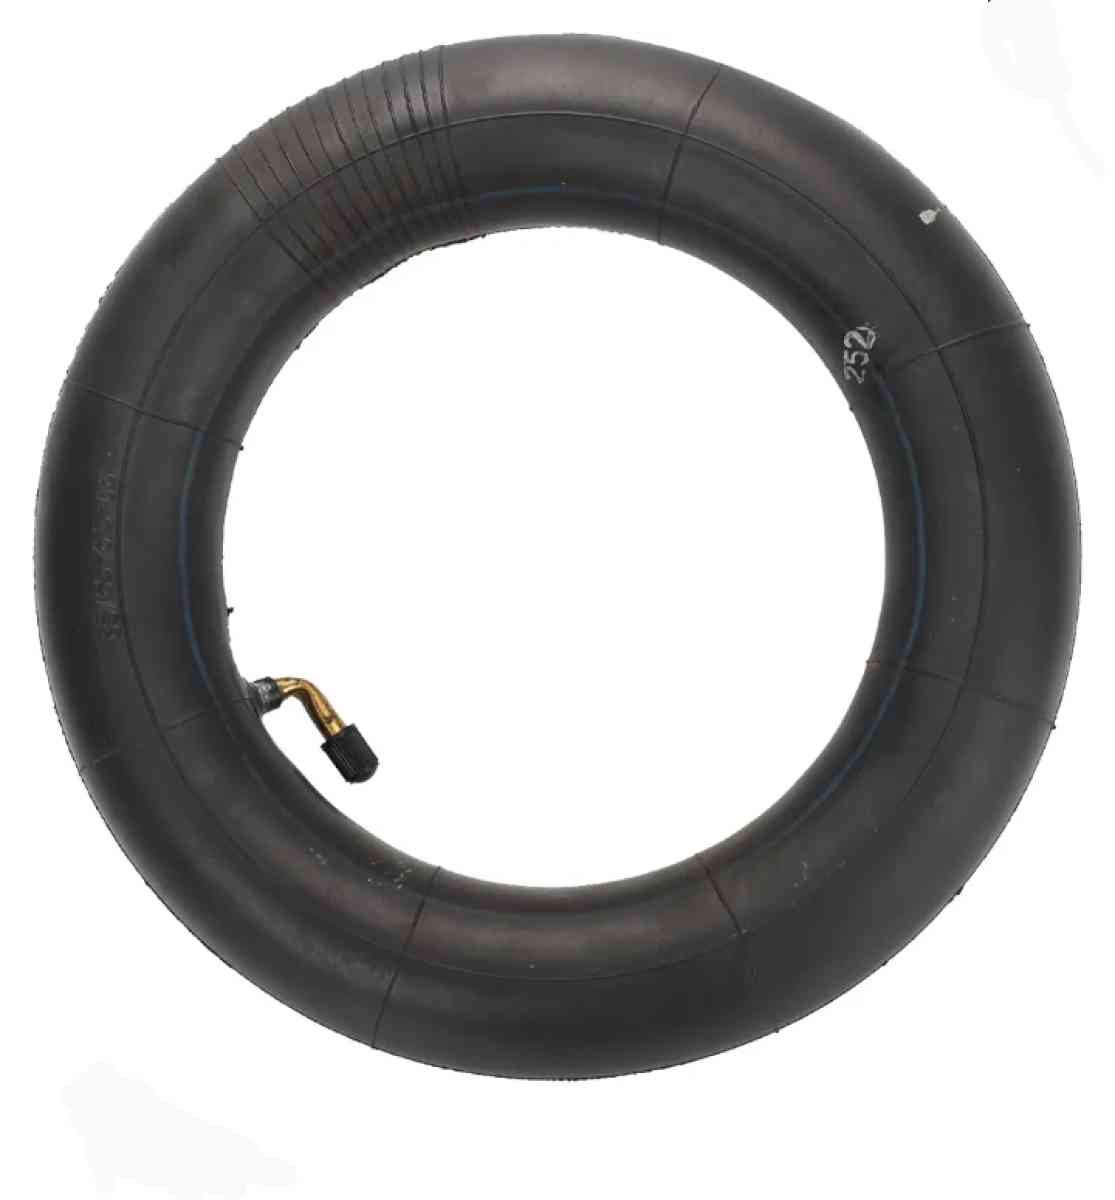 Tire inner tubes